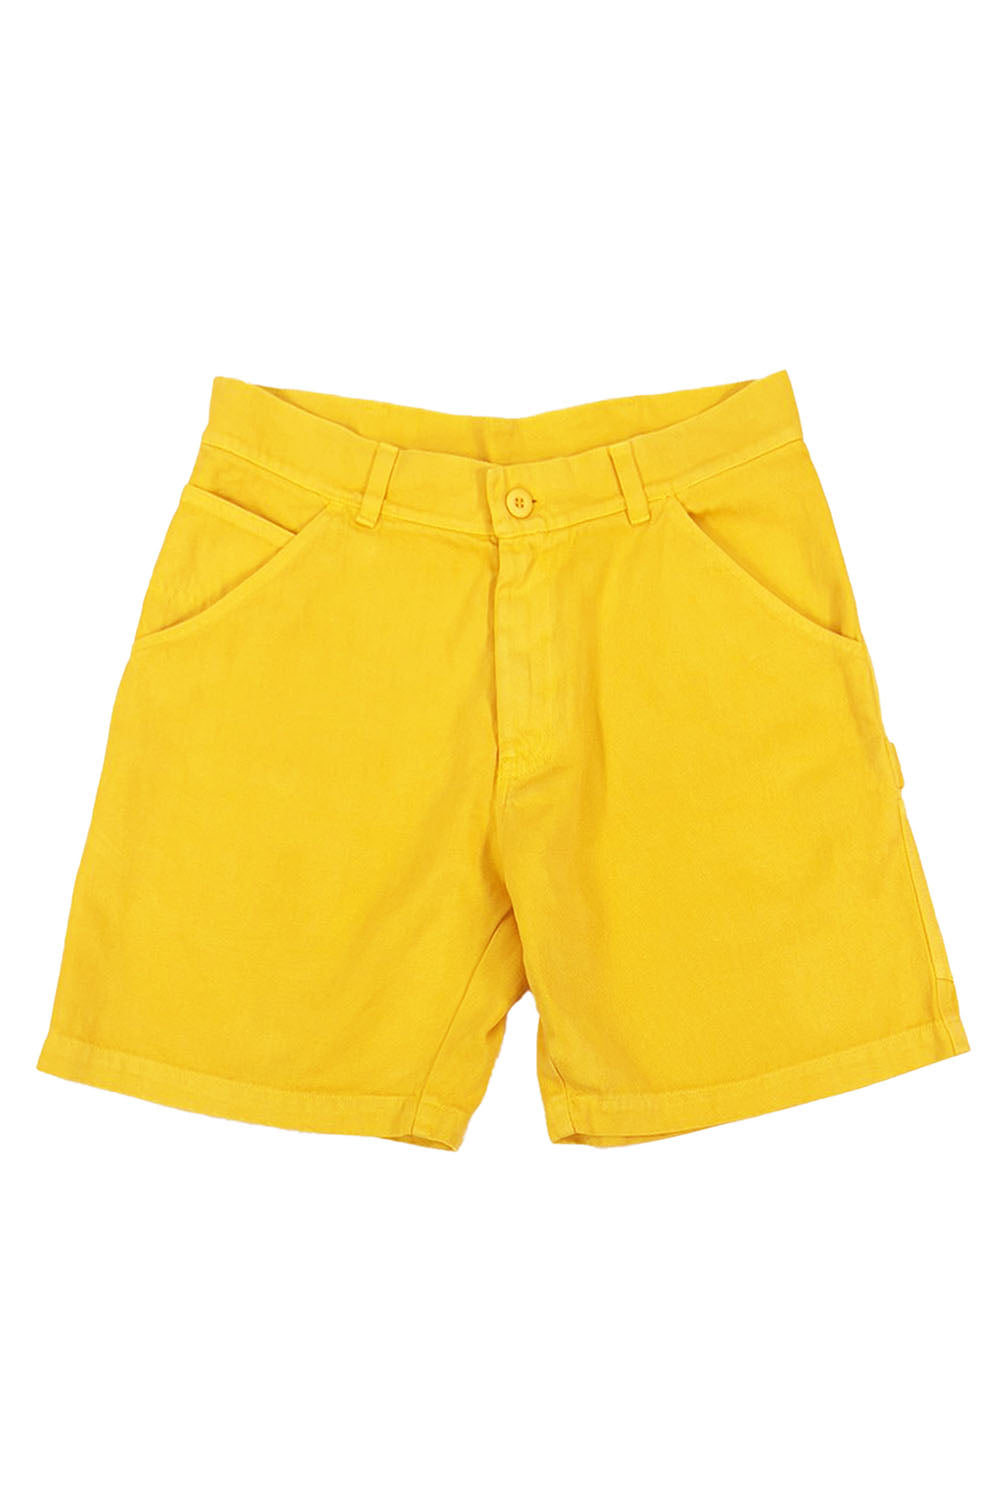 Mountain Short - Sale Colors | Jungmaven Hemp Clothing & Accessories / Color: Sunshine Yellow